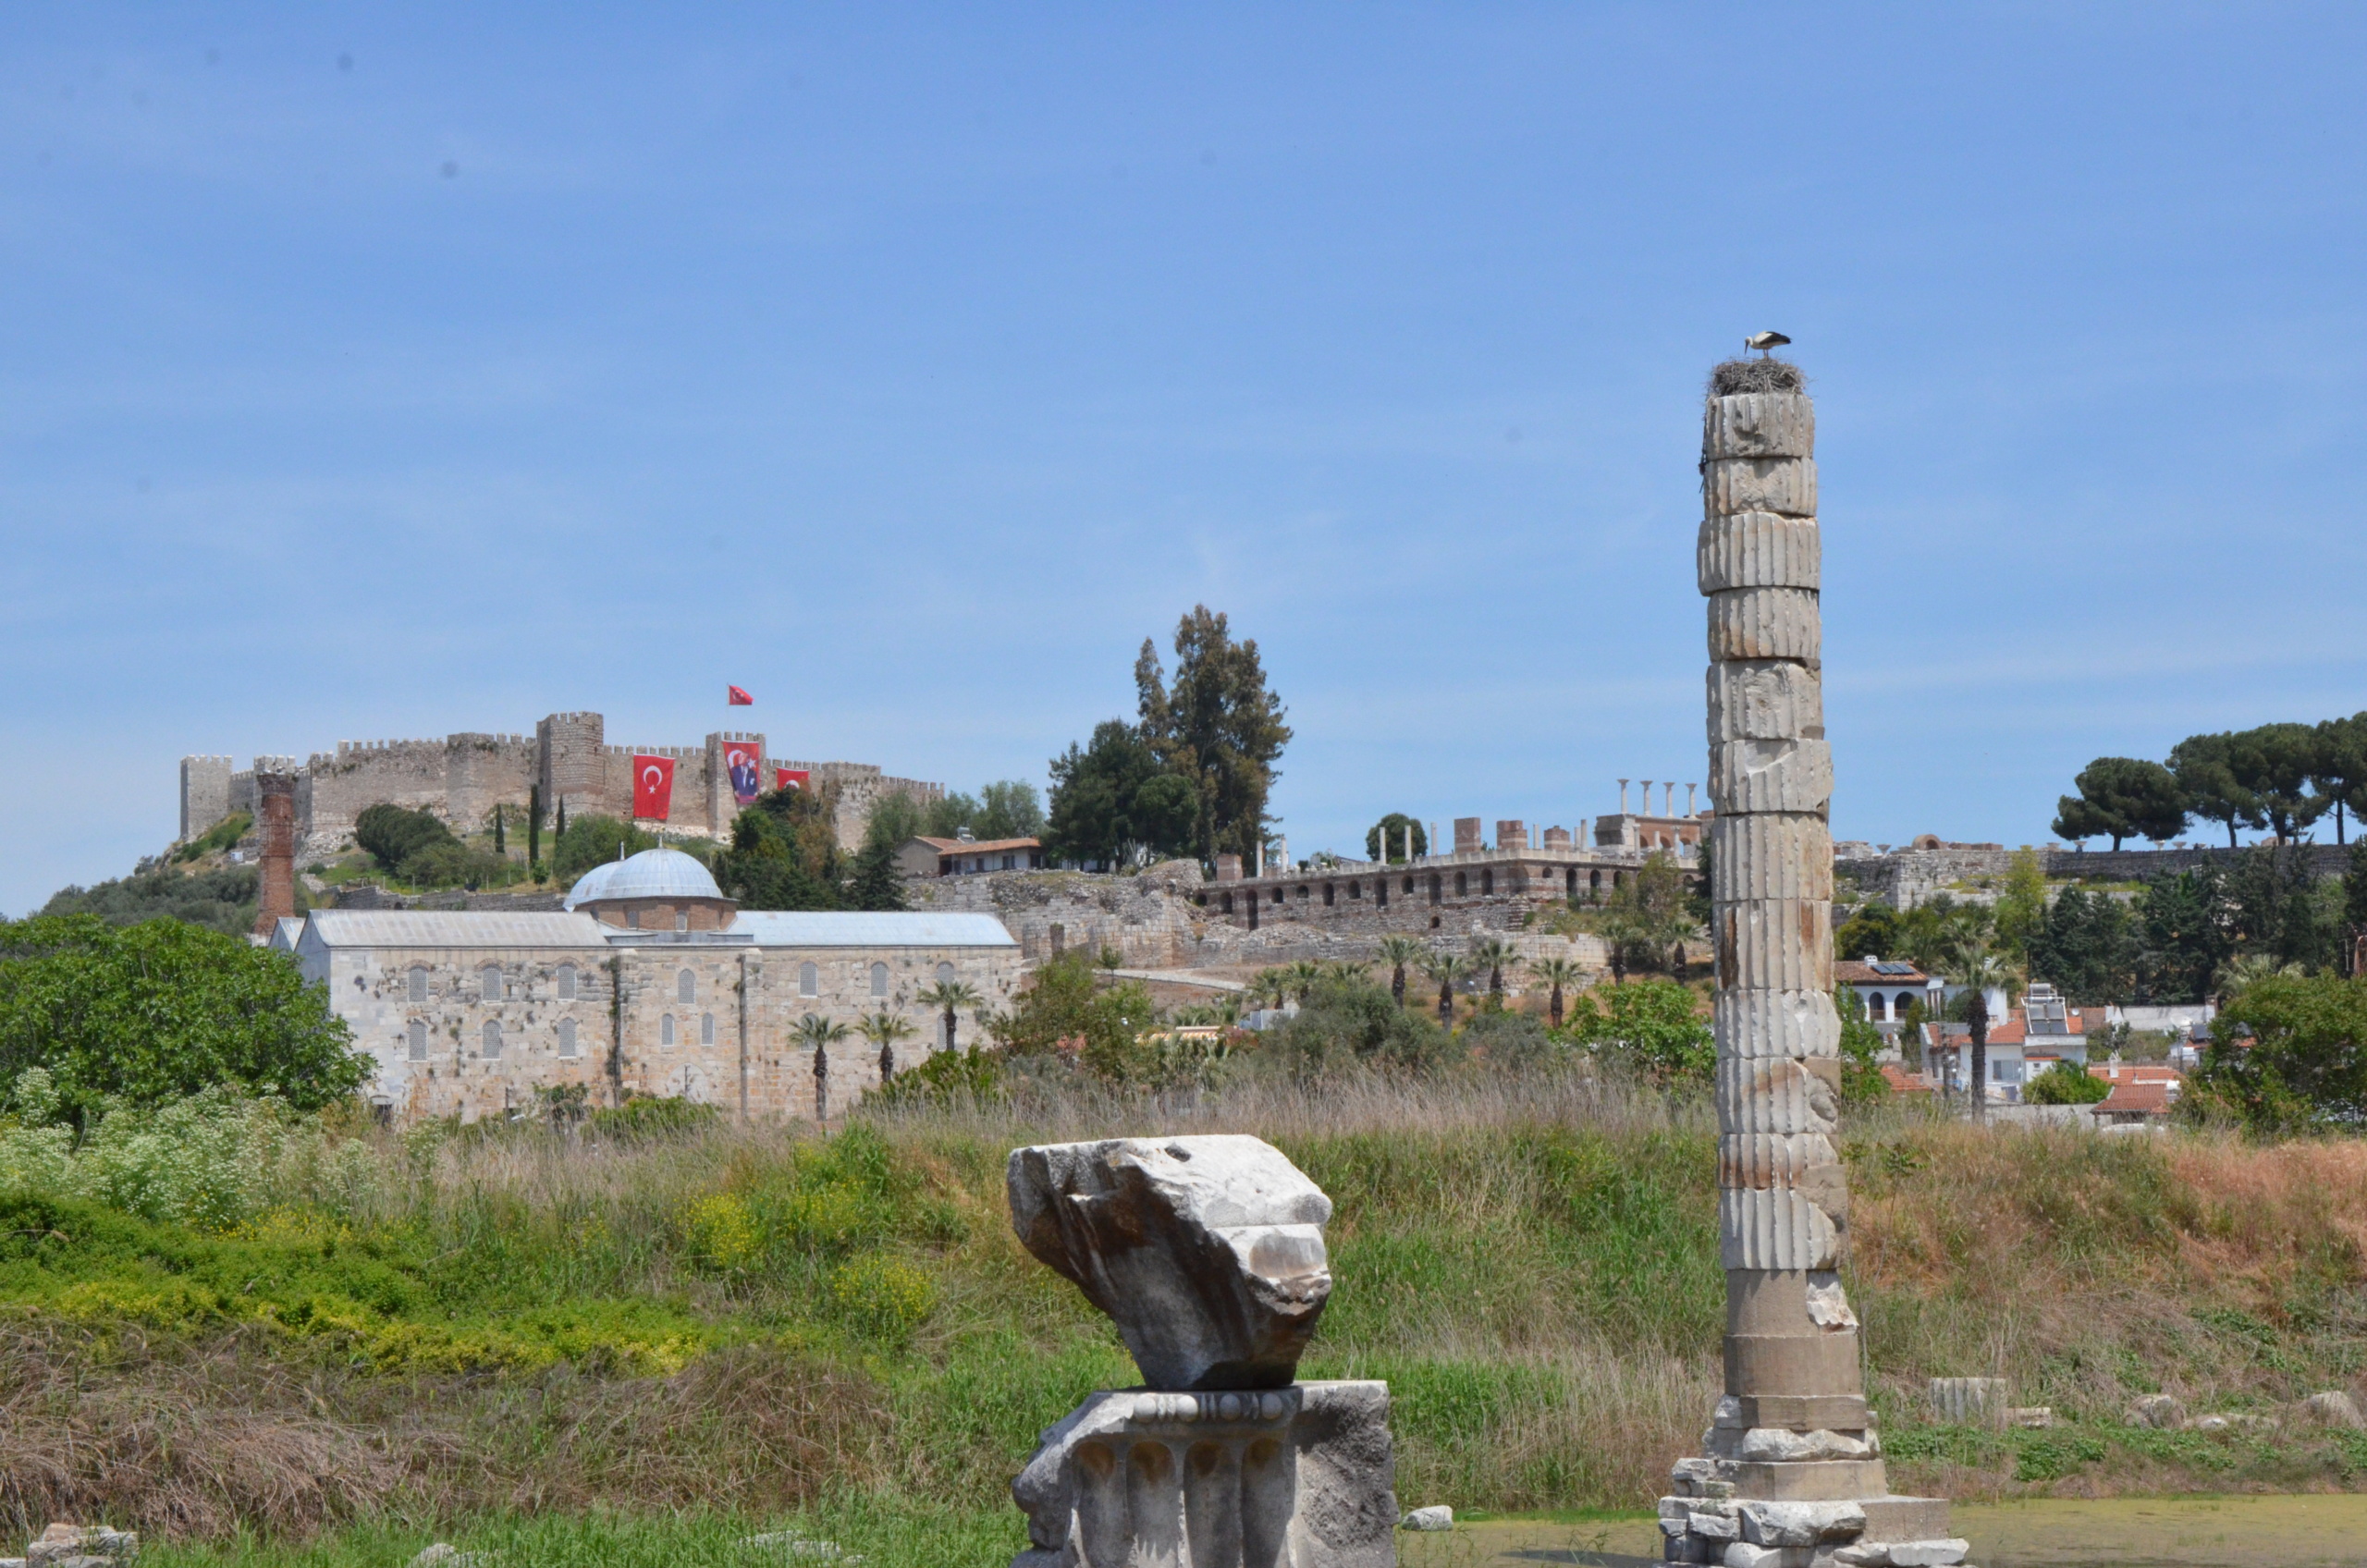 世界7不思議のひとつ アルテミス神殿 を探索してみた 世界の歩き方